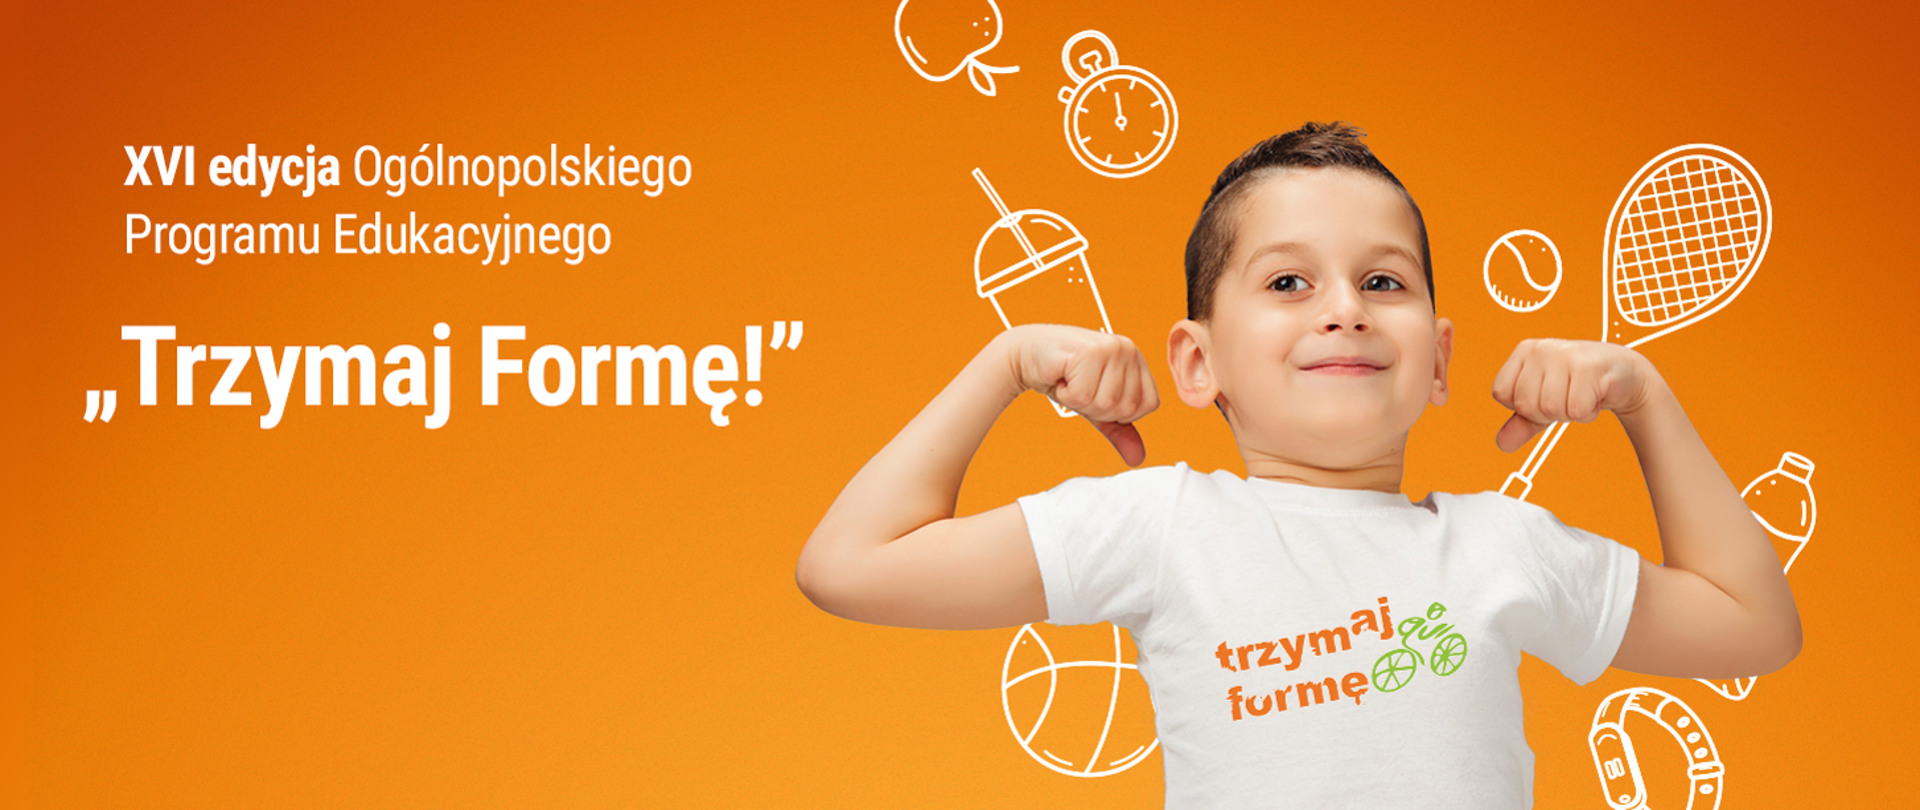 plakat promujący ogólnopolski program "Trzymaj Formę" - na pomarańczowym tle chłopiec w koszulce z hasłem programu, z rękoma uniesionymi w górę, podkreślającymi tężyznę fizyczną